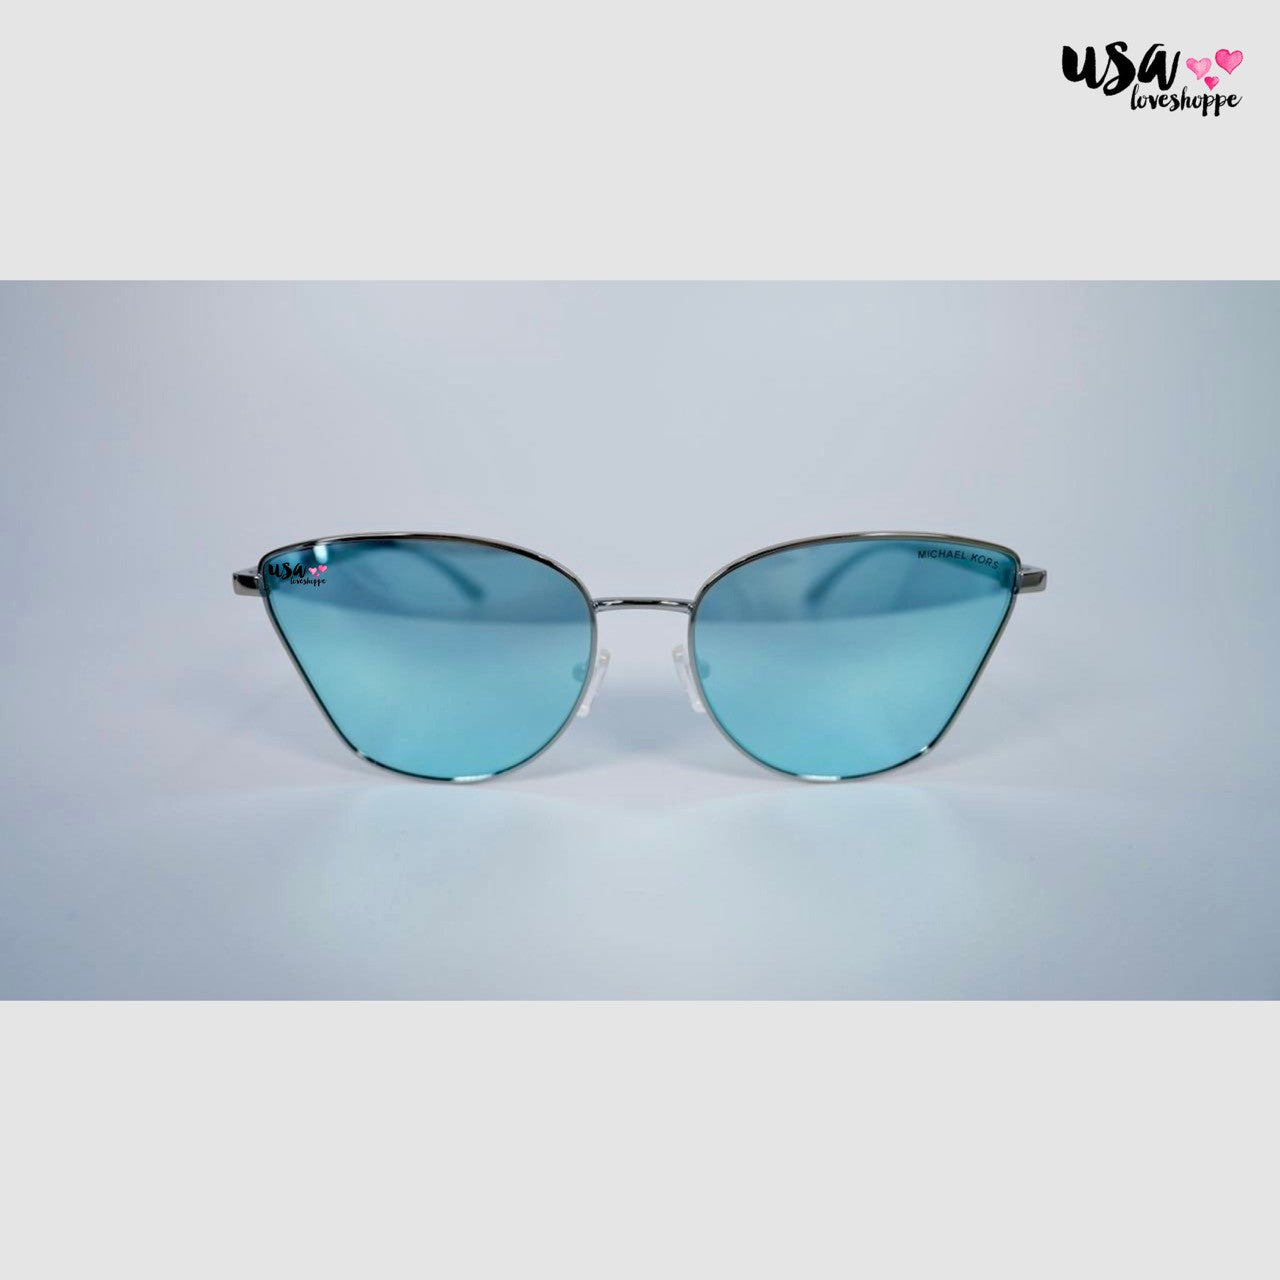 Michael Kors Women Outbanks Sunglasses in Blue (0MK1137)